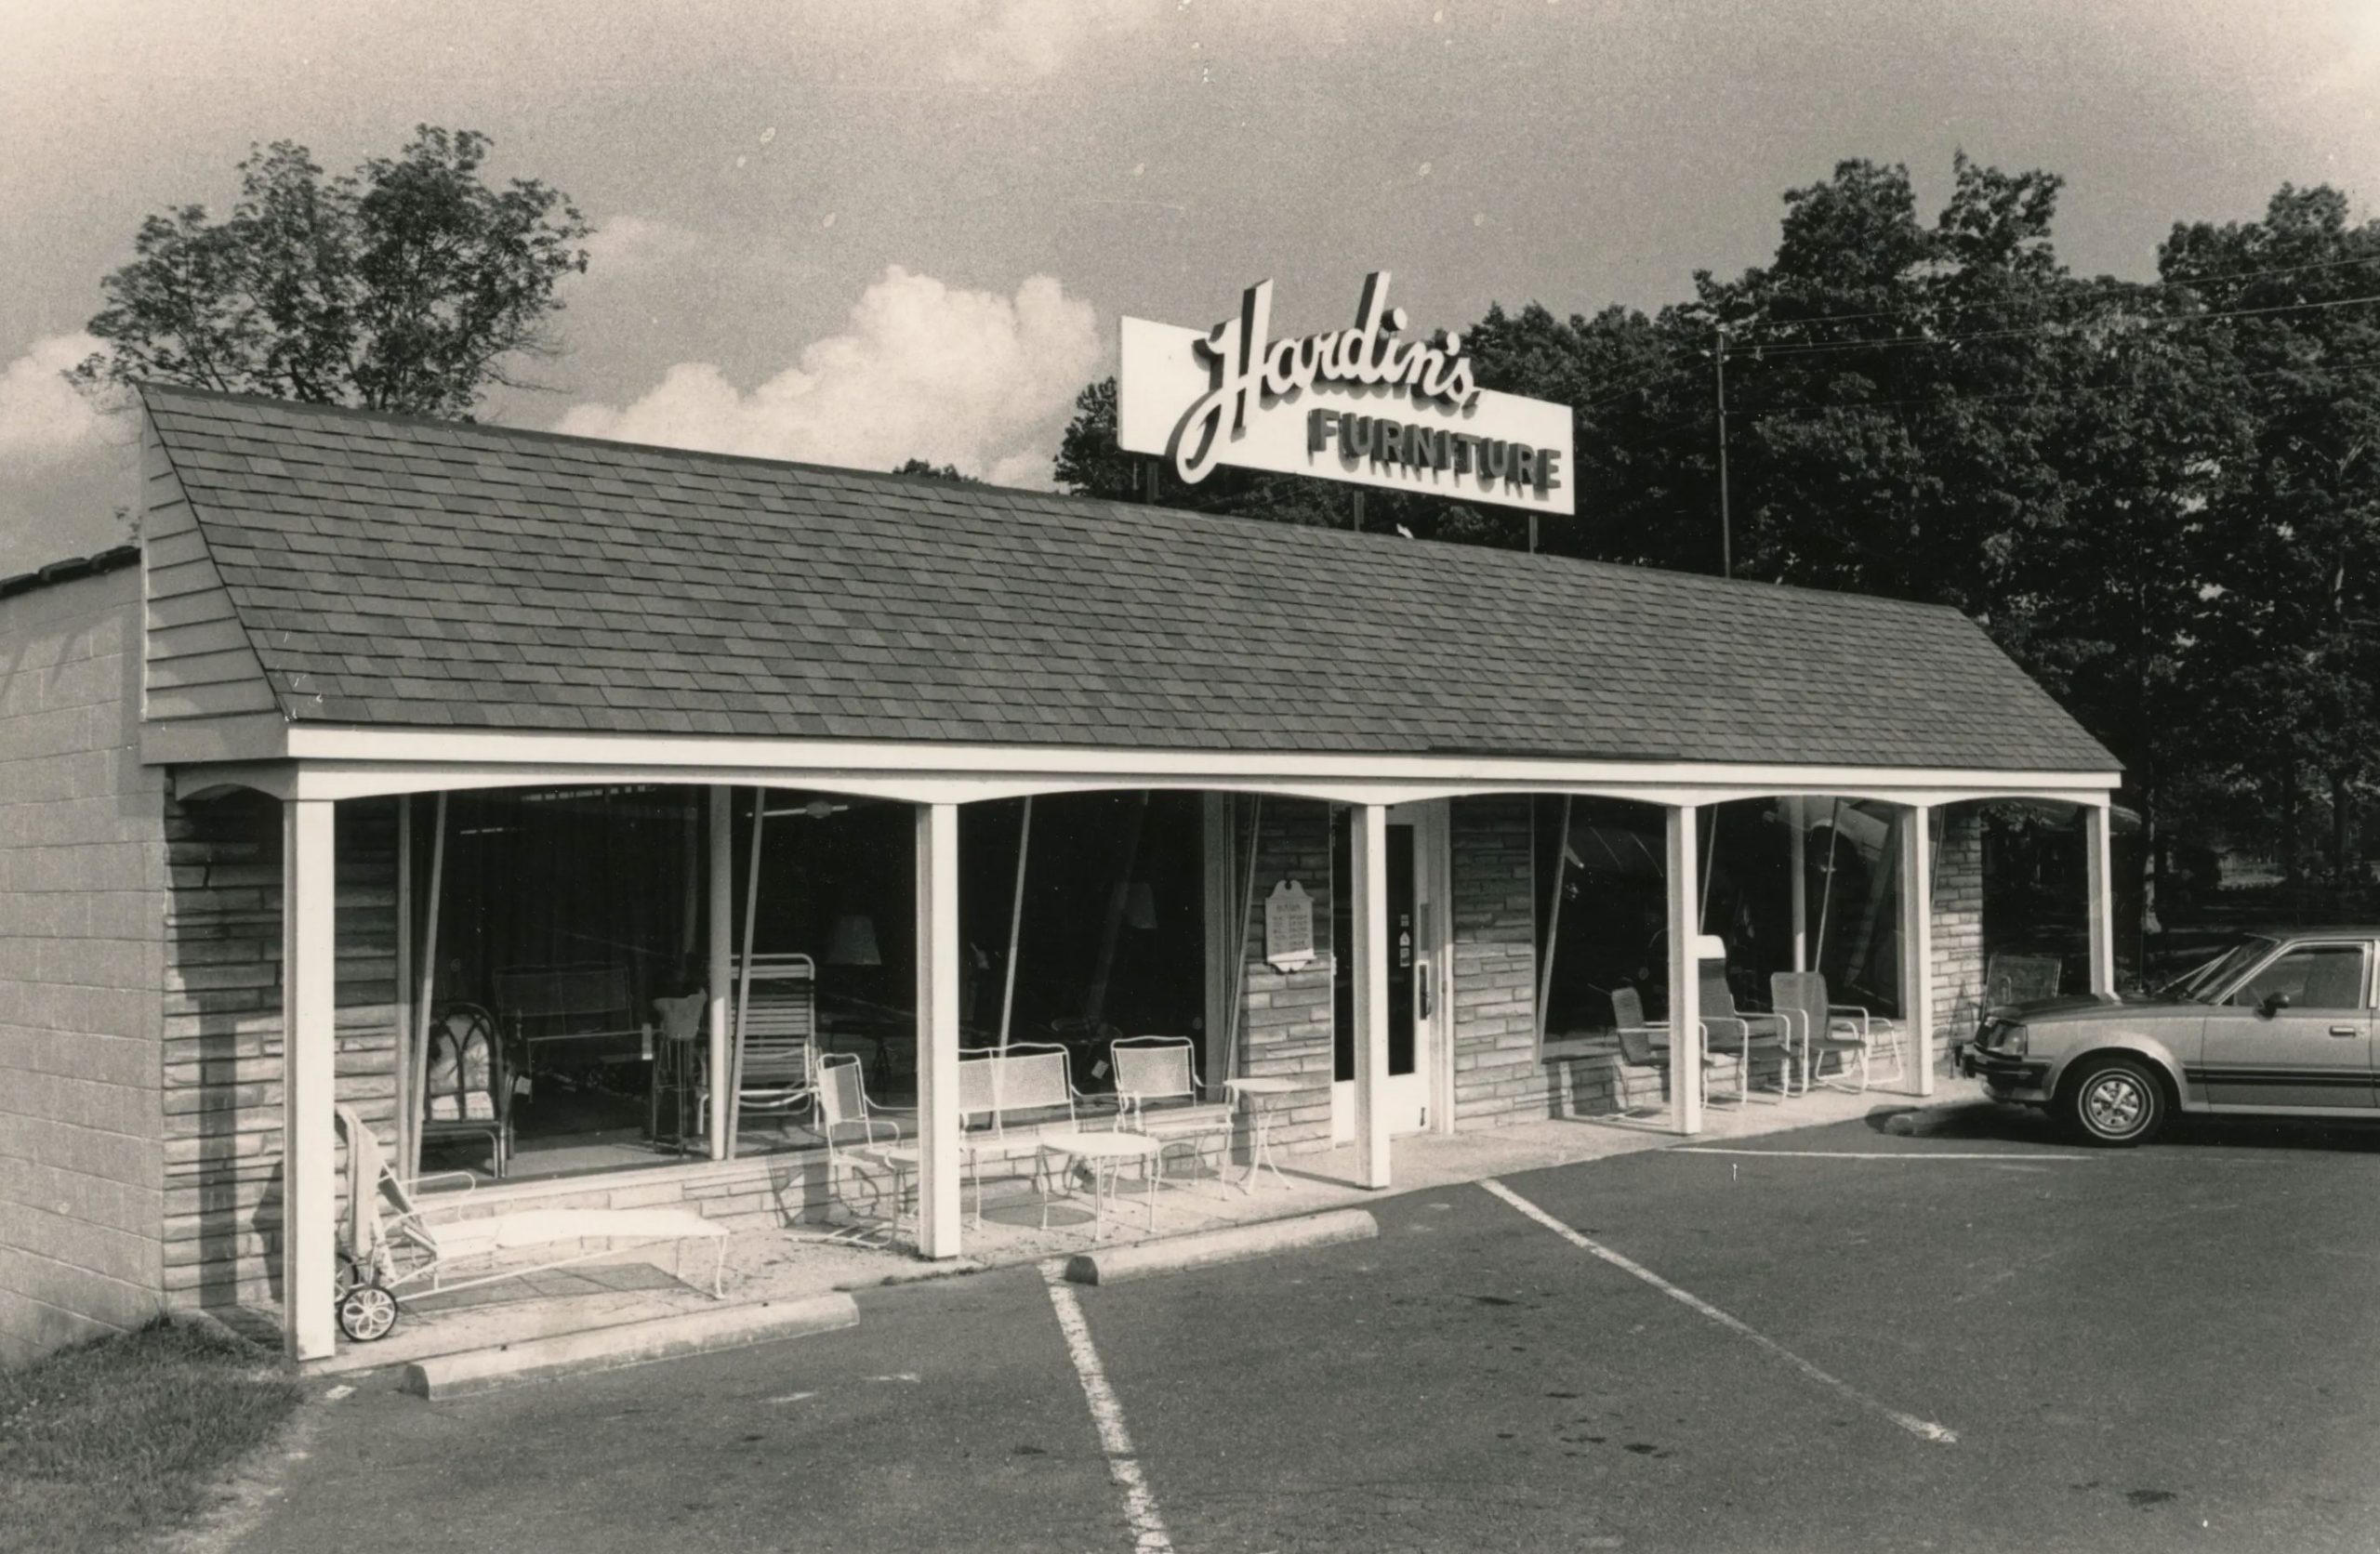 Hardin's Furniture storefront